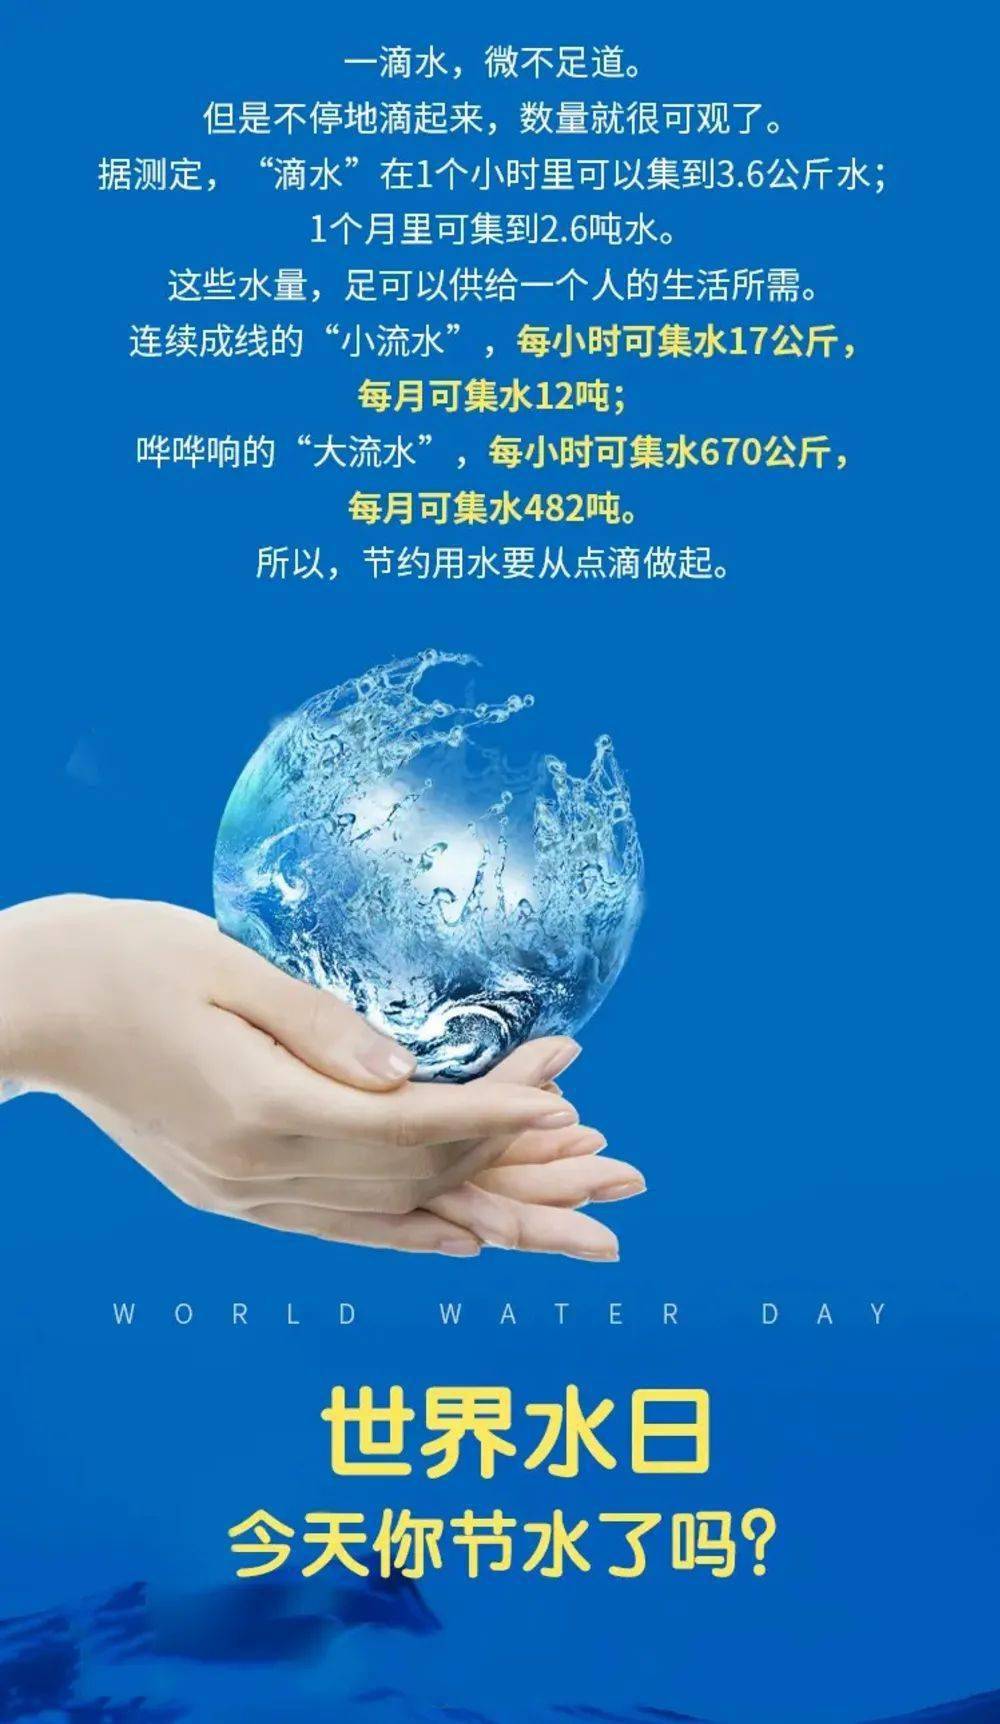 2021年世界水日中国水周宣传活动网络知识有奖答题邀您参与